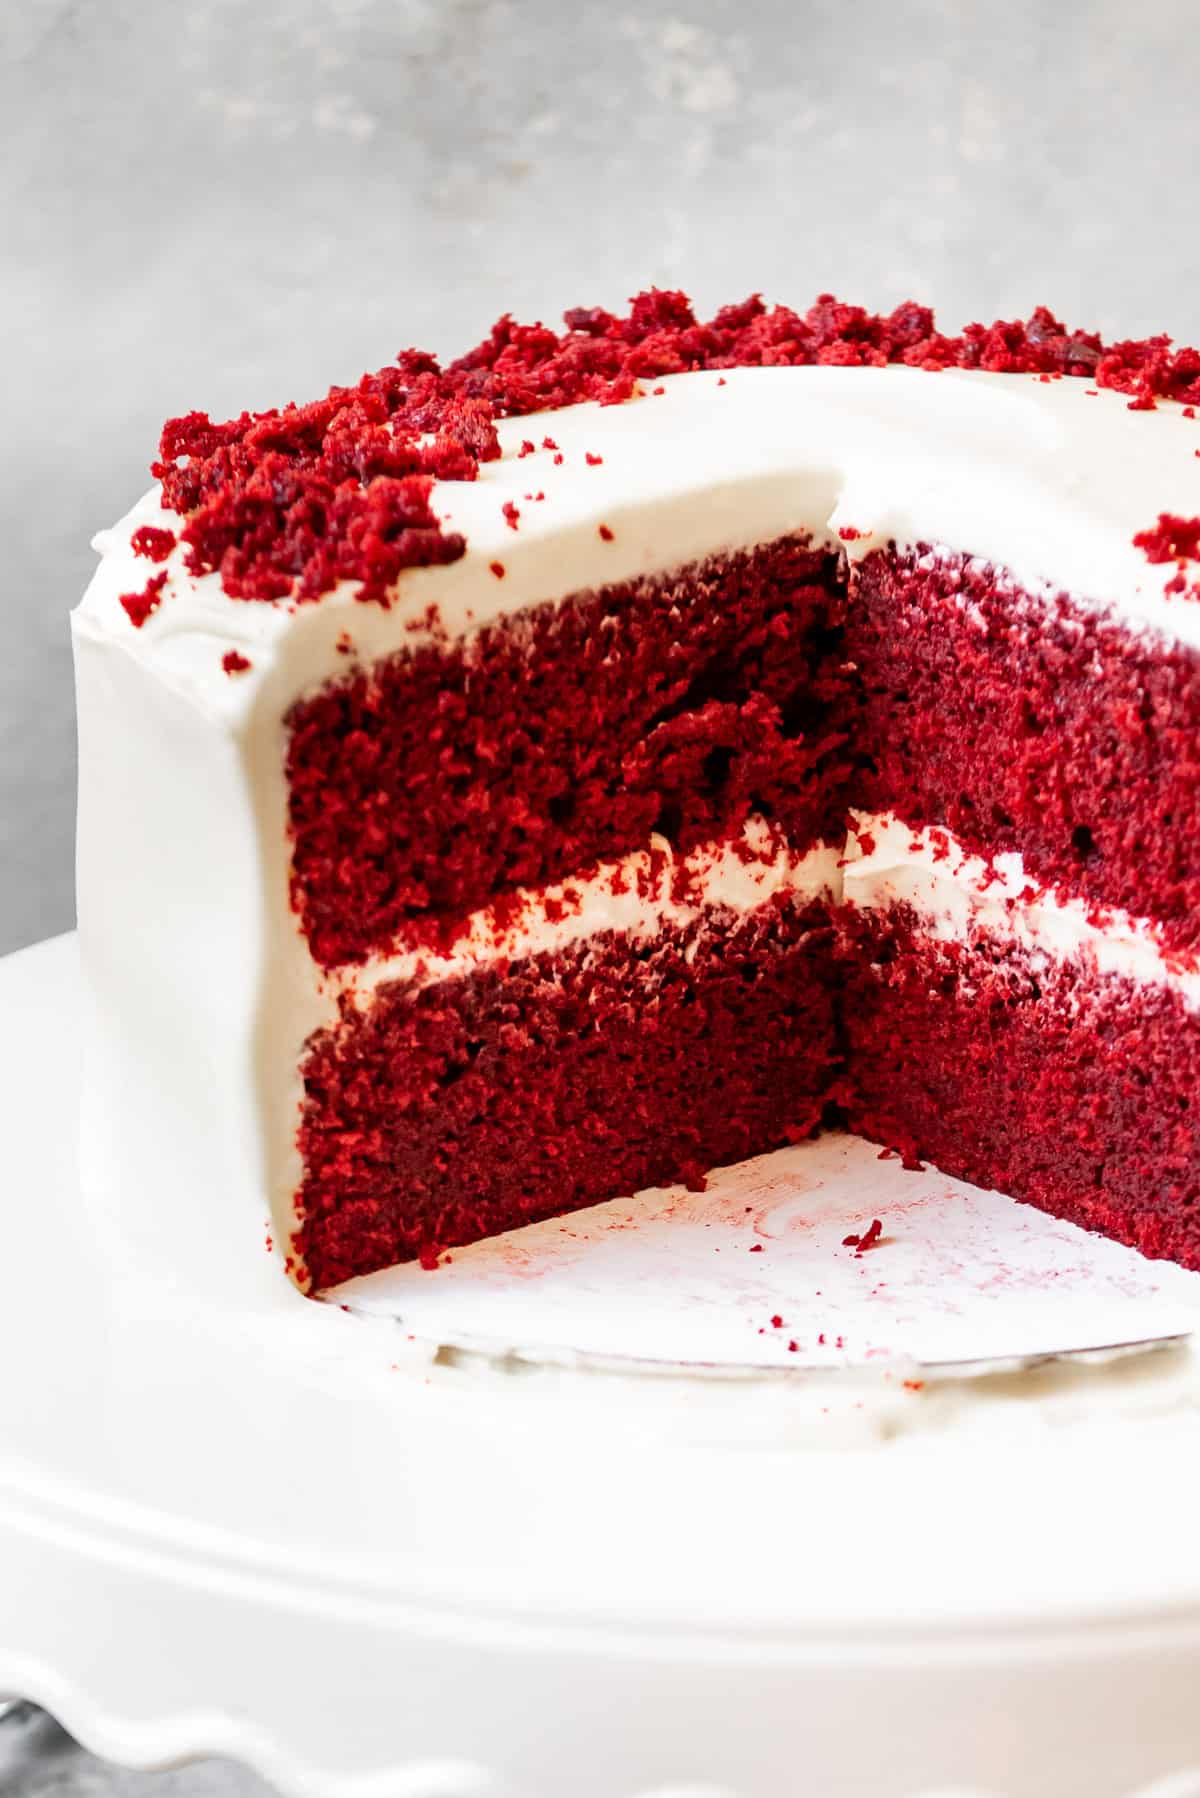 Best Red Velvet Cake Recipe - House of Nash Eats